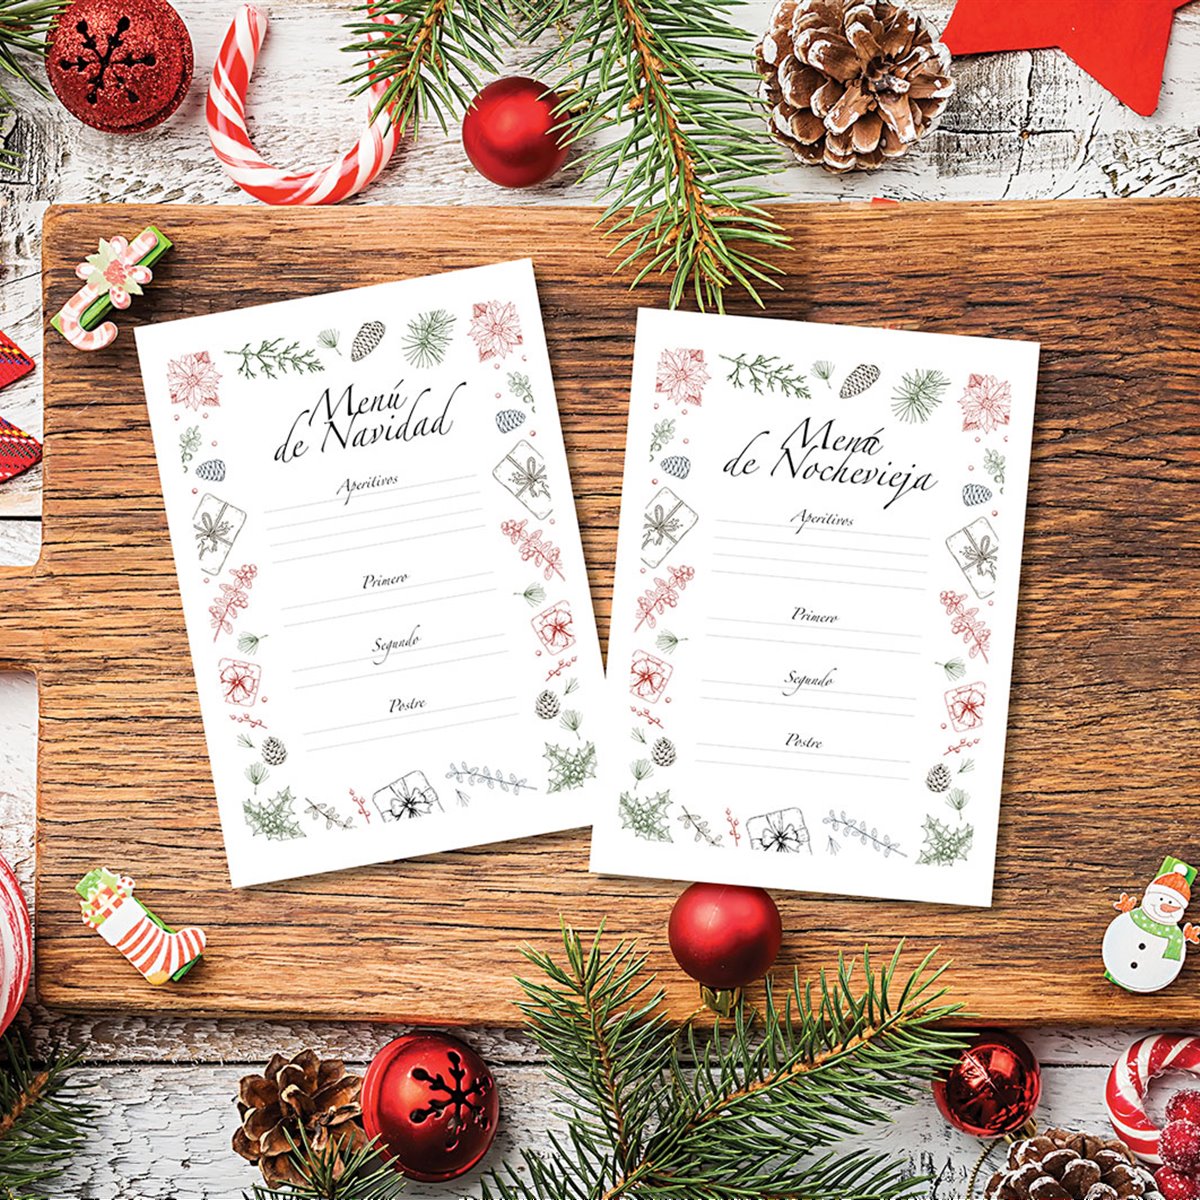 Plantilla descargable (gratis) para escribir tus menús de Navidad